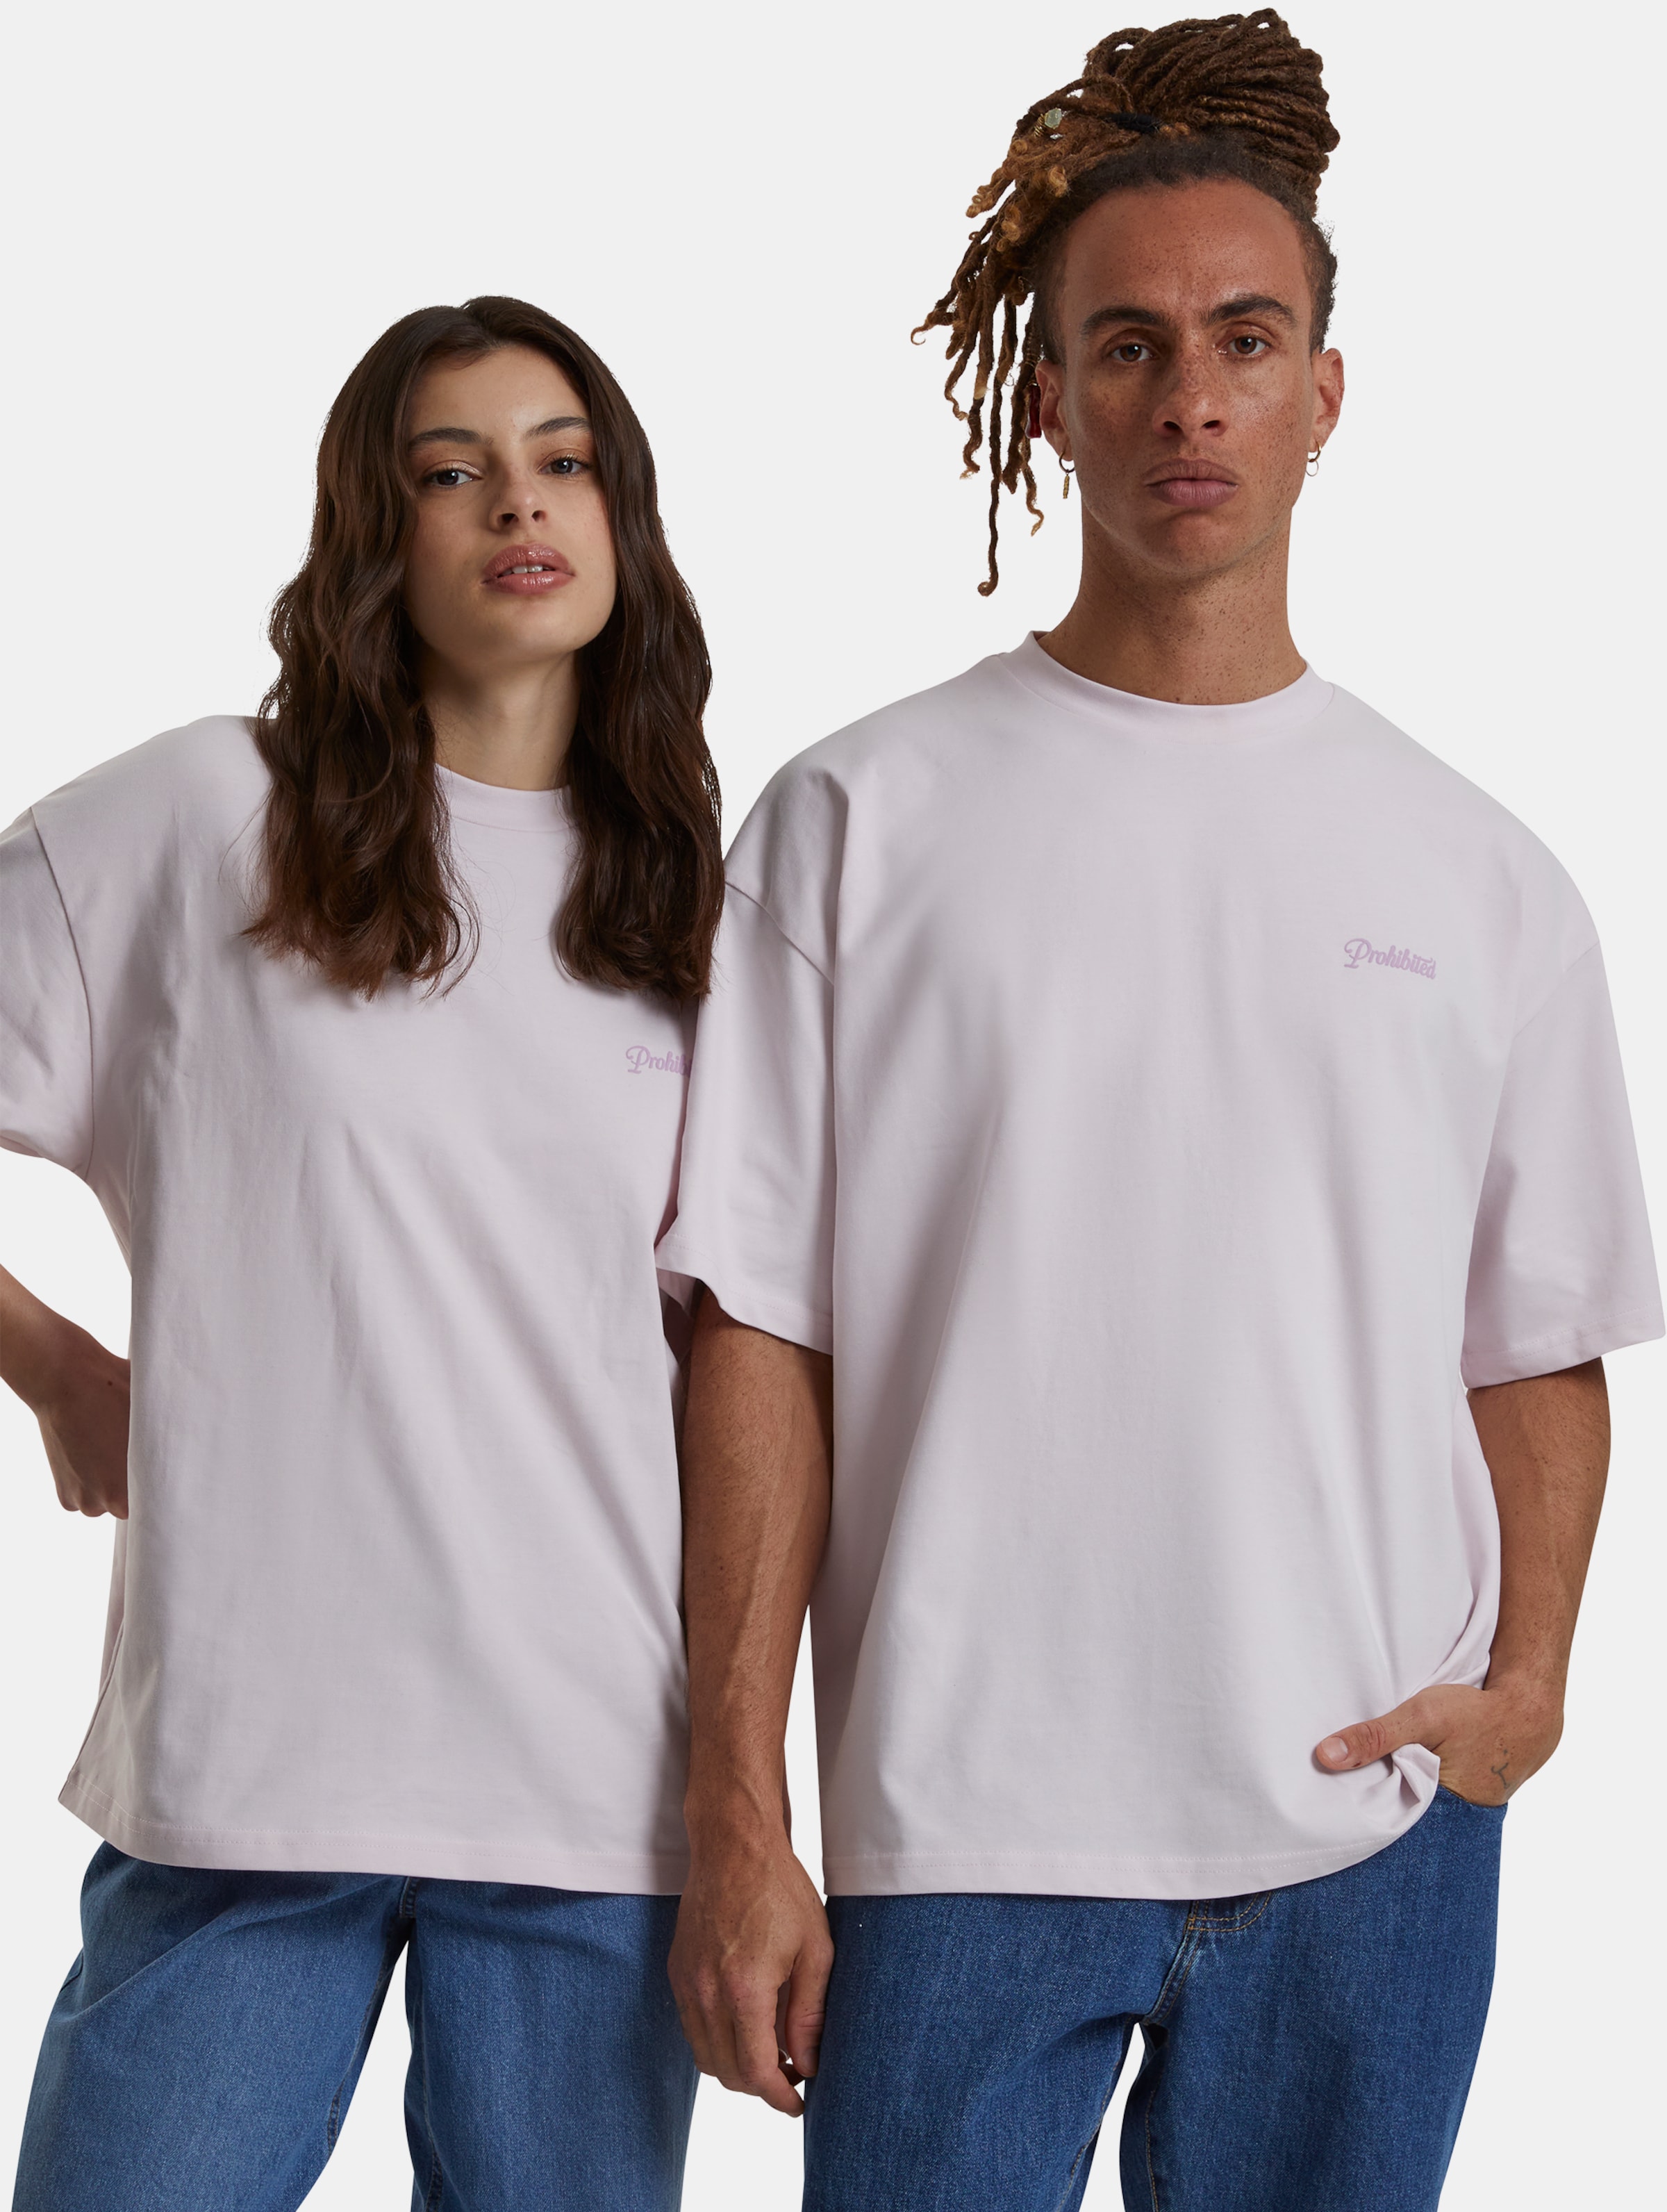 Prohibited 10119 V2 T-Shirts Frauen,Männer,Unisex op kleur roze, Maat XL